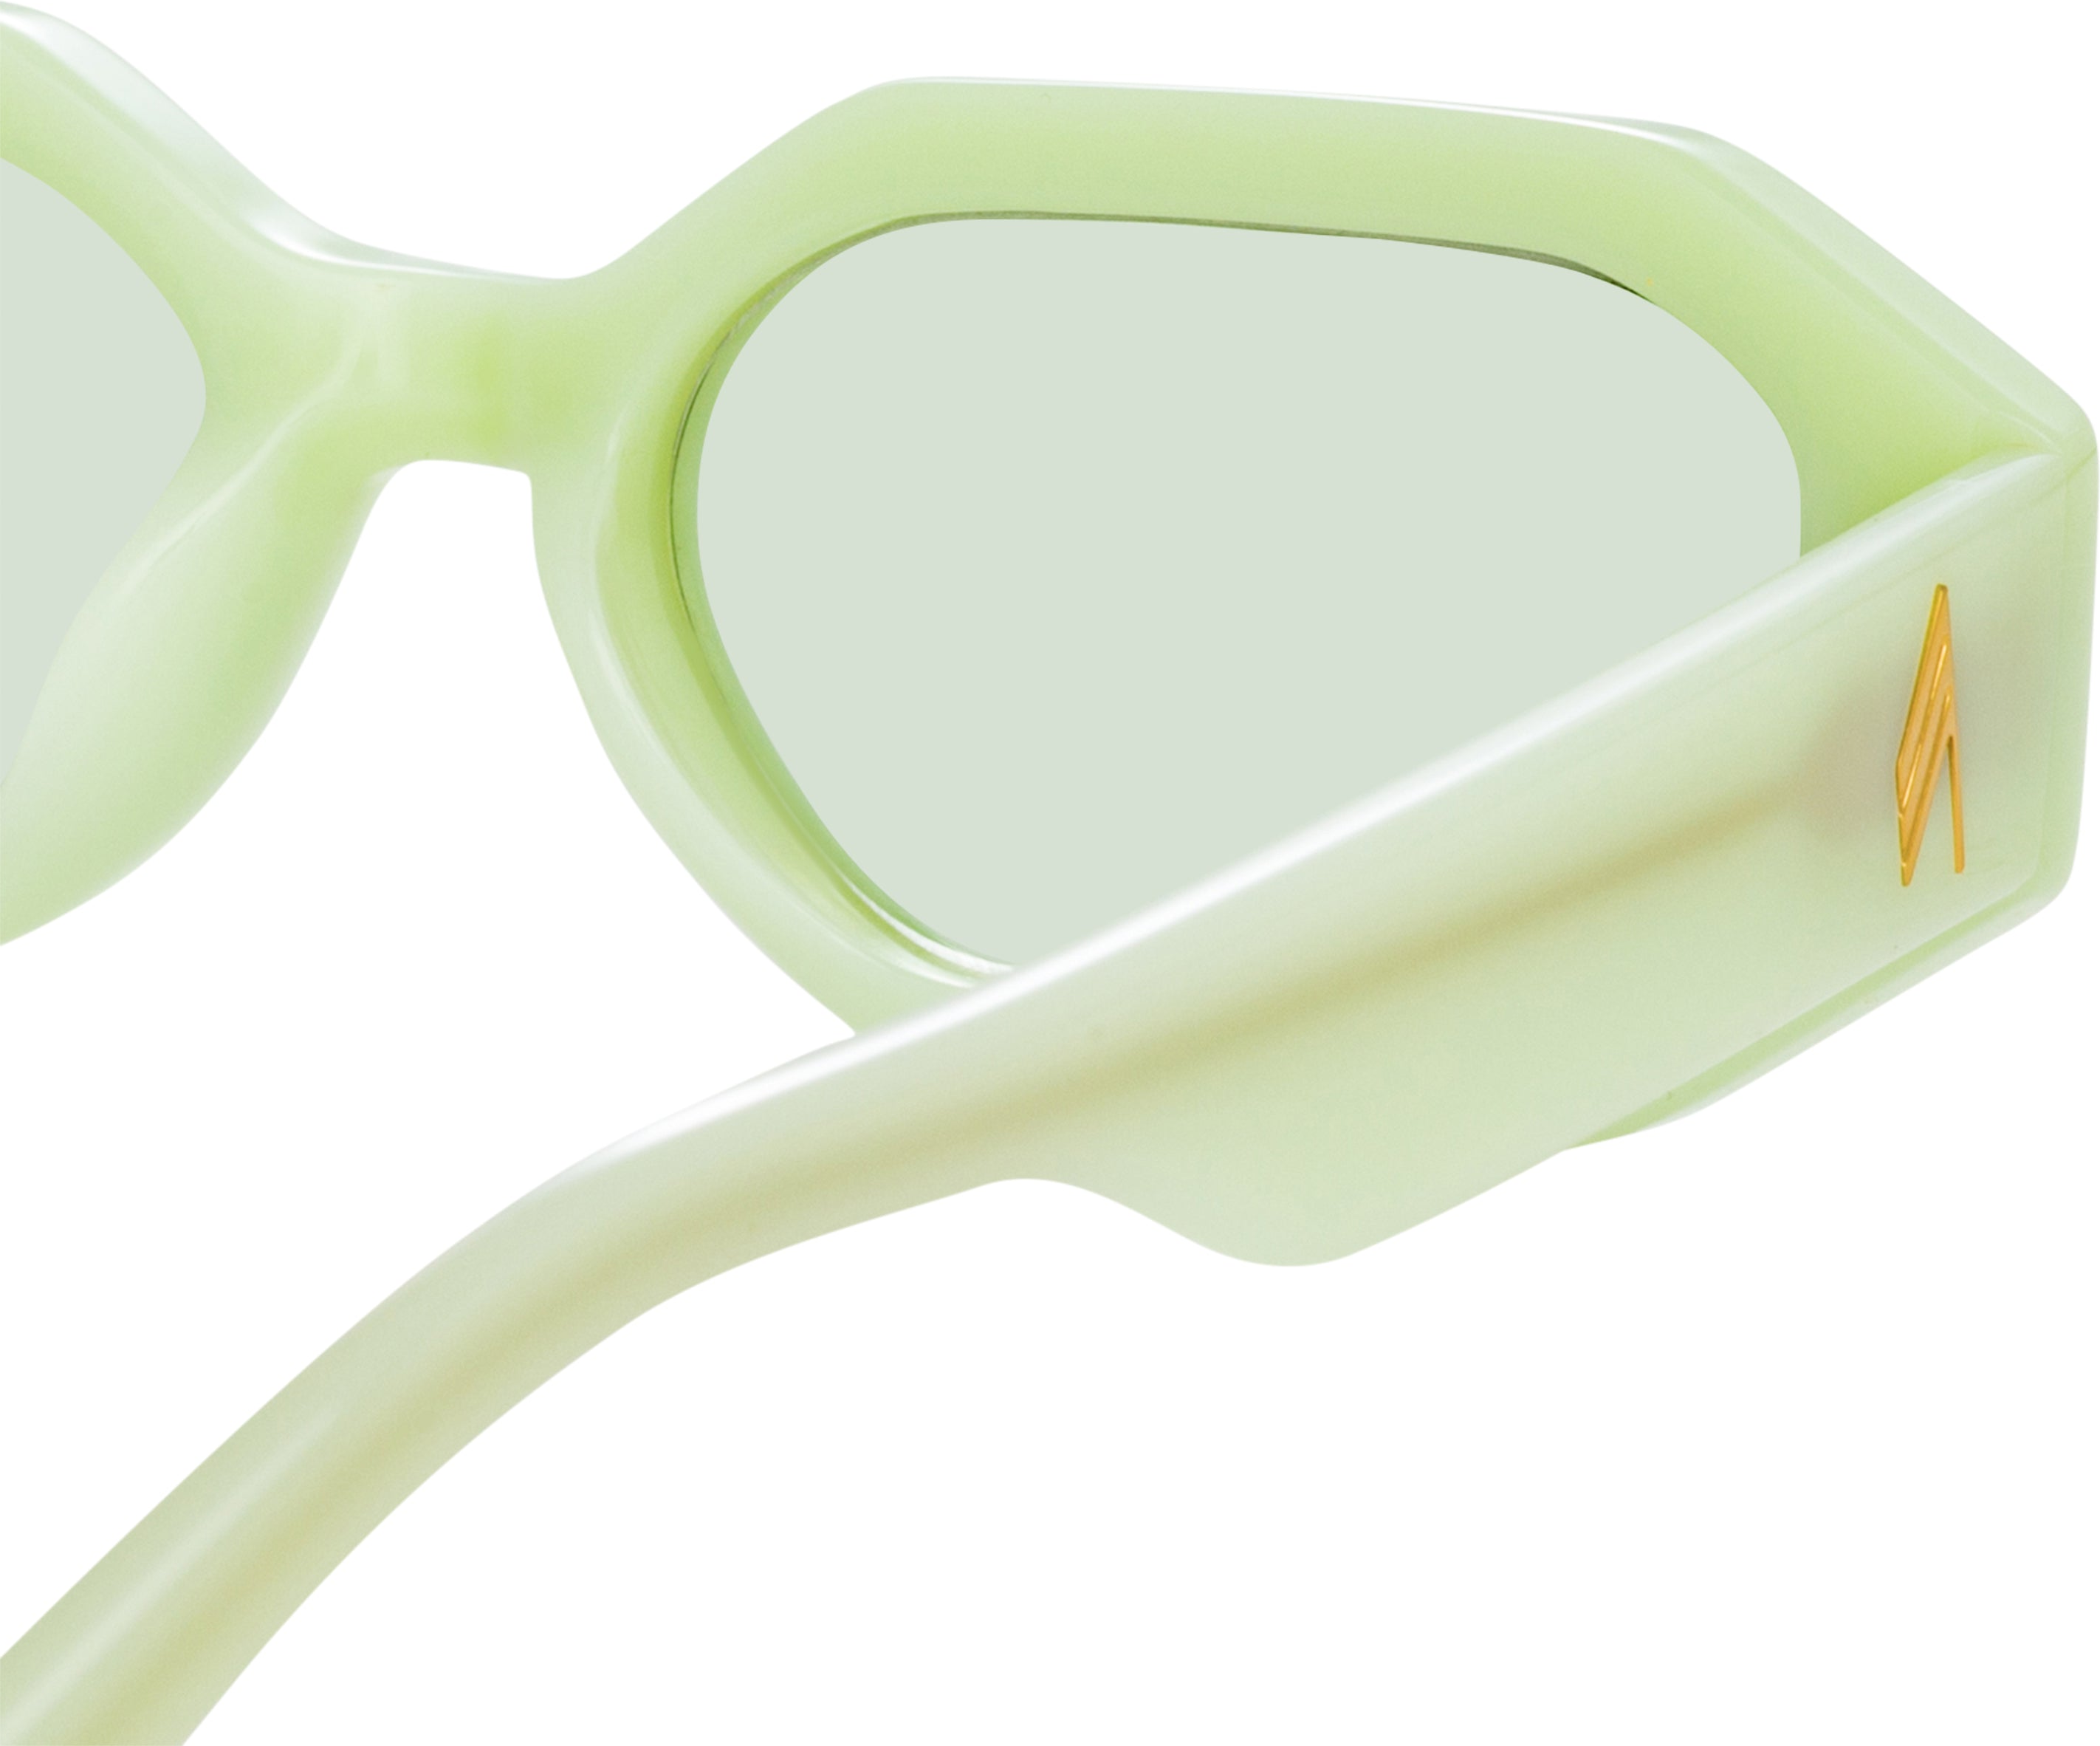 Color_ATTICO14C6SUN - The Attico Irene Angular Sunglasses in Mint